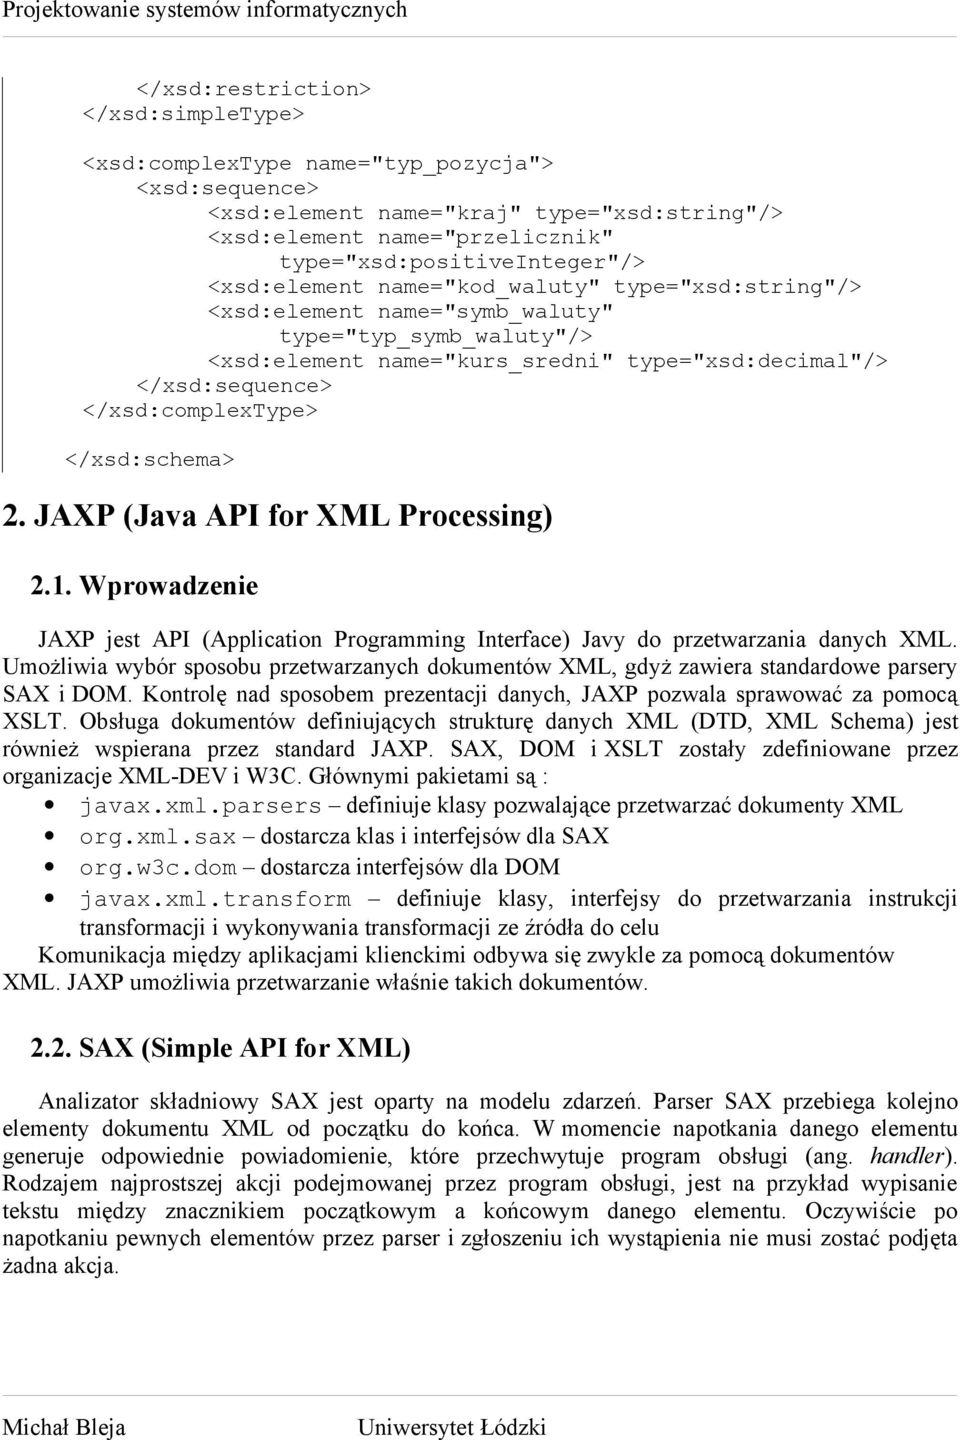 </xsd:schema> 2. JAXP (Java API for XML Processing) 2.1. Wprowadzenie JAXP jest API (Application Programming Interface) Javy do przetwarzania danych XML.